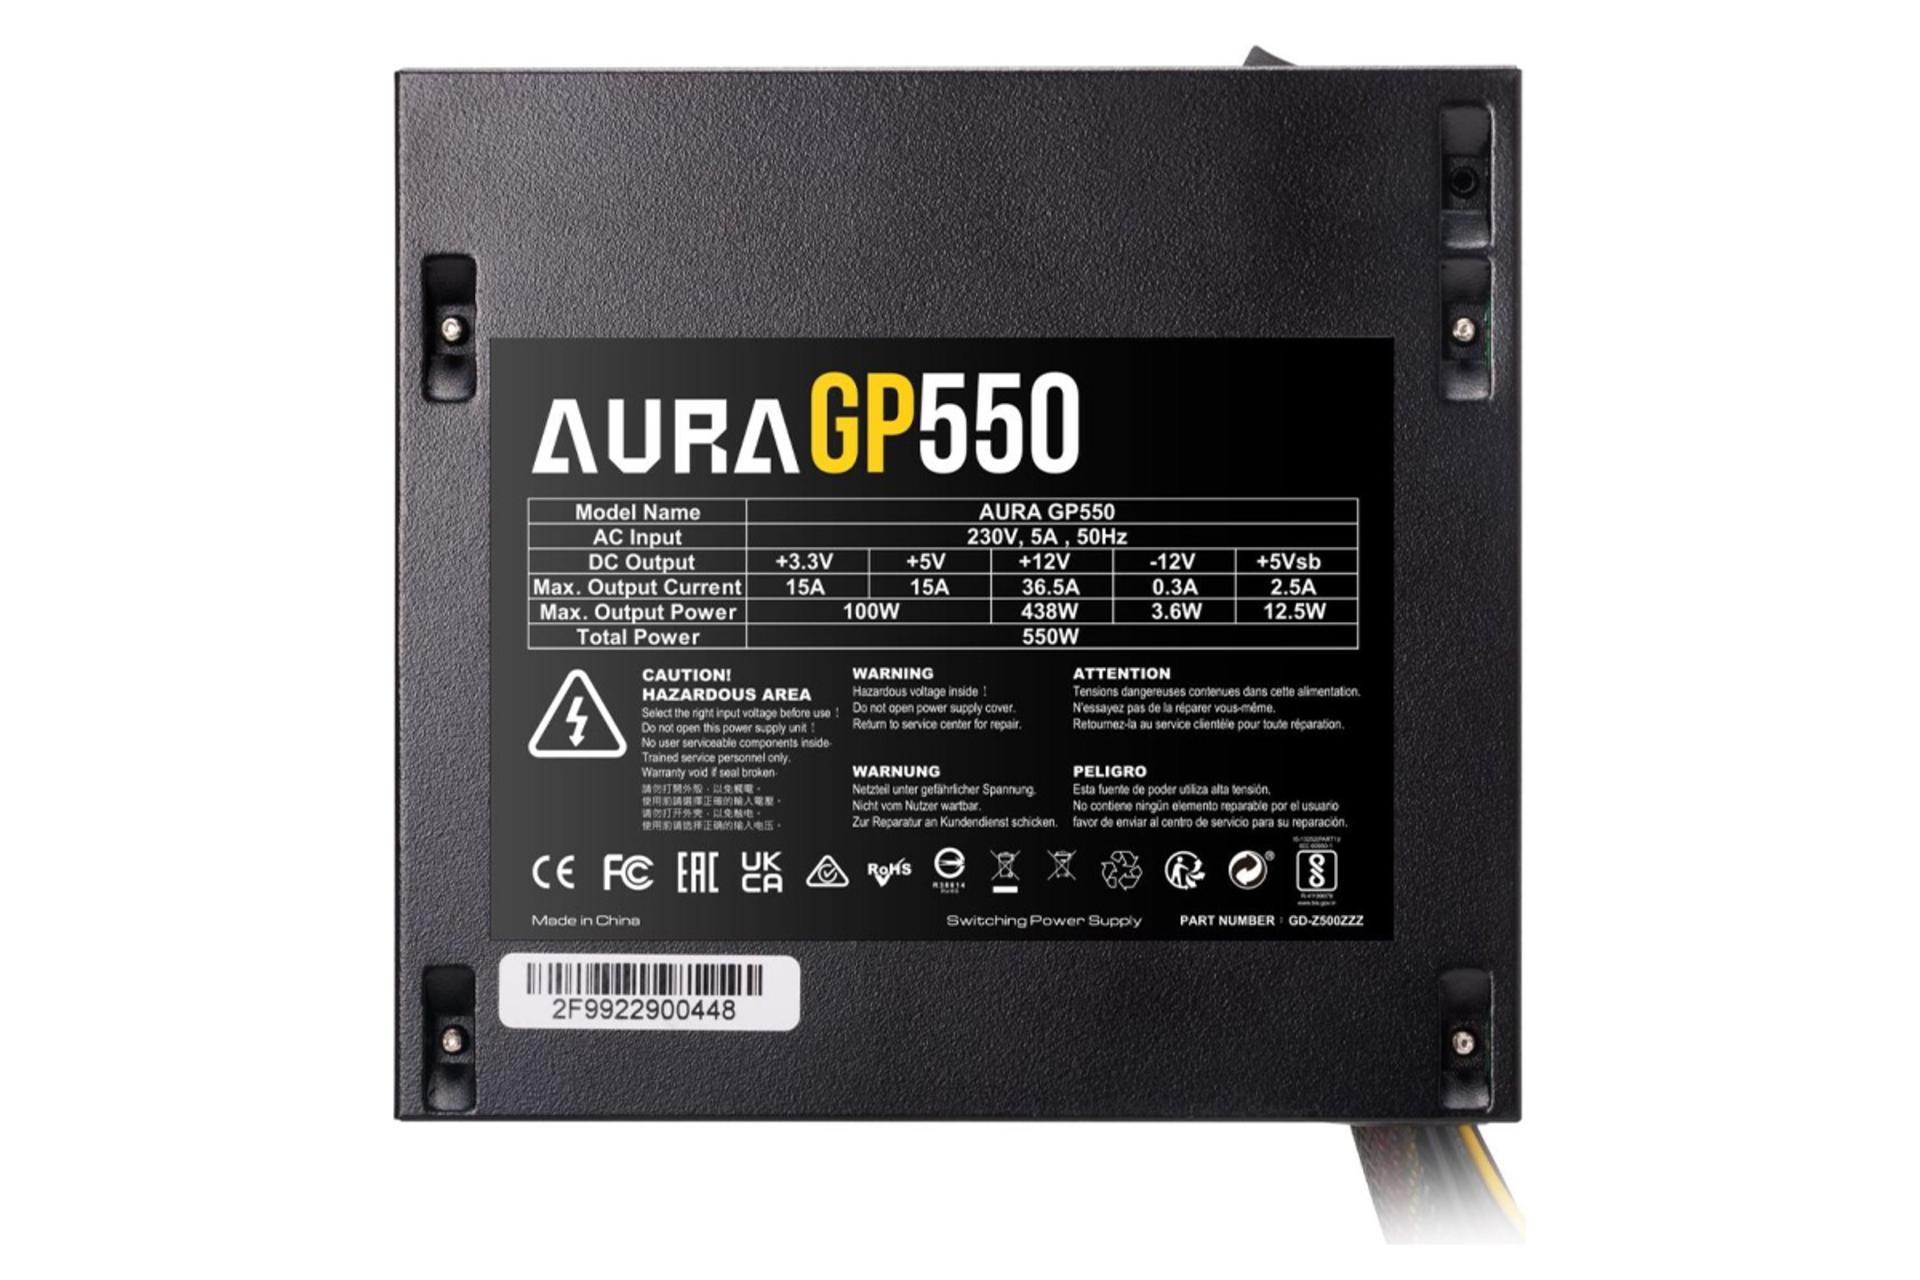 قدرت و توان پاور کامپیوتر گیم دیاس AURA GP550 با توان 550 وات